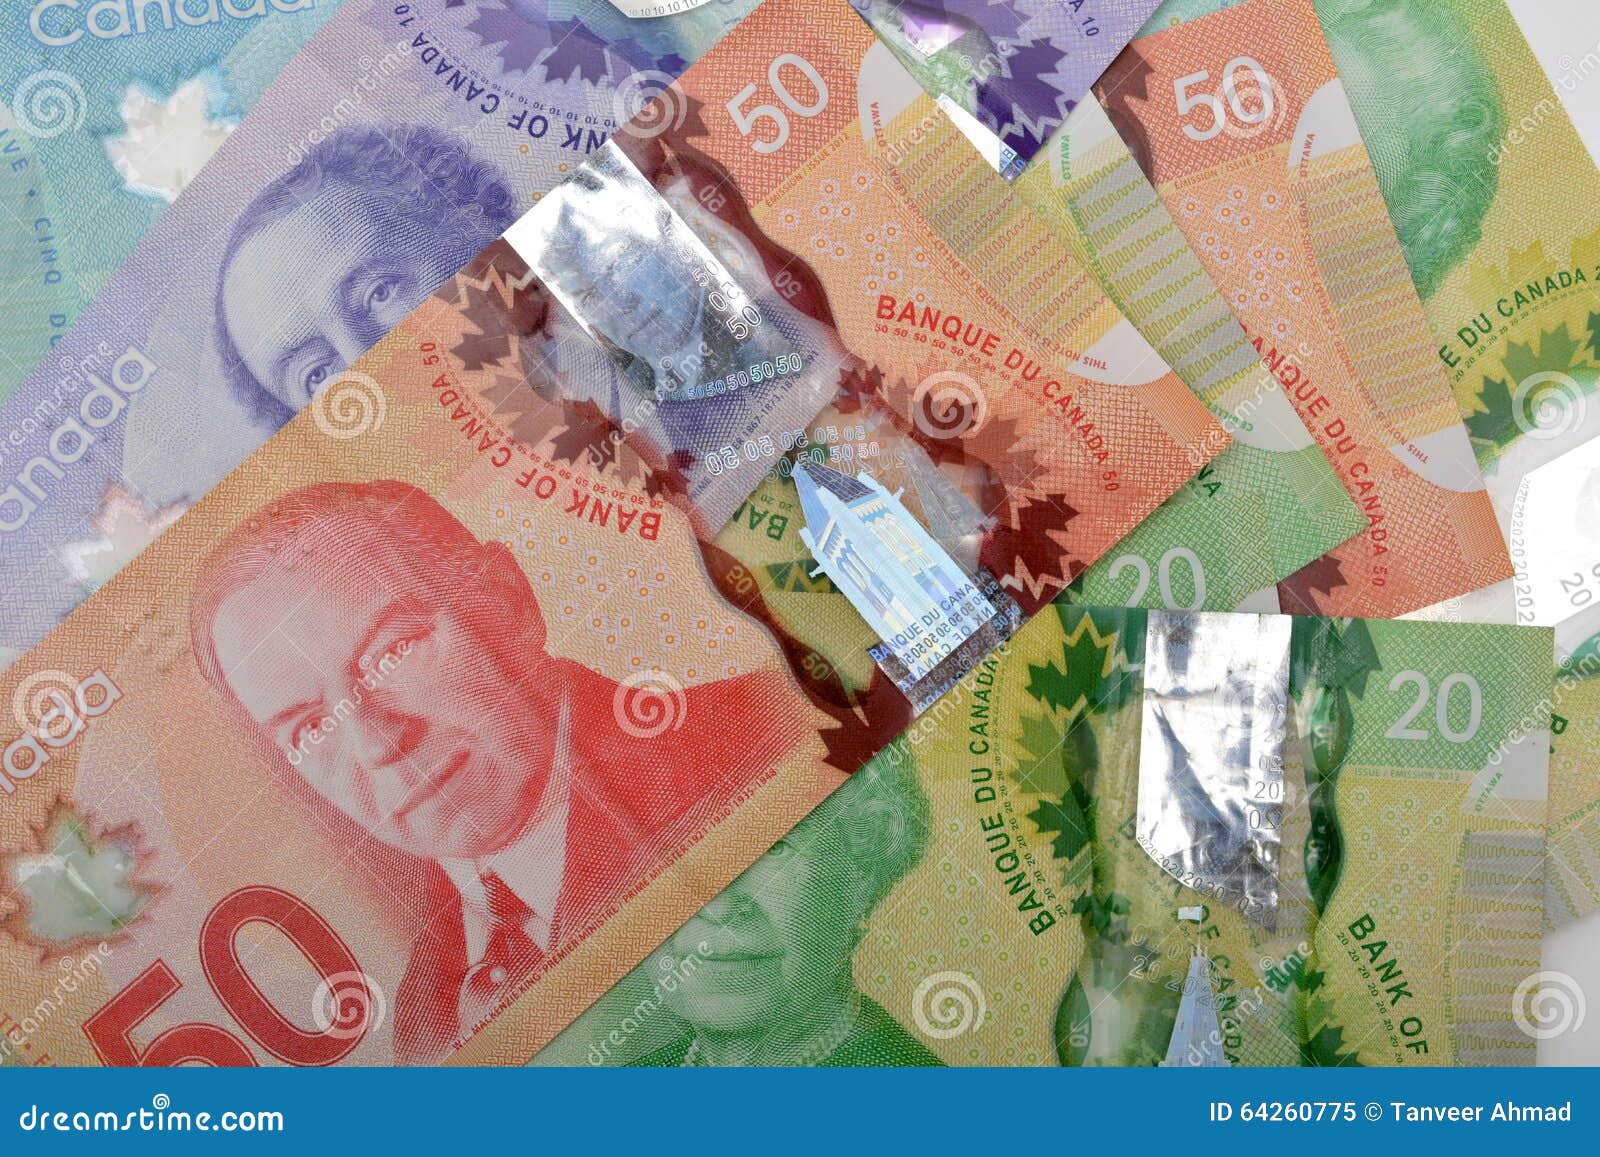 加拿大货币 库存图片. 图片 包括有 松散, 打印, 叶子, 广告牌, 纸张, 新建, 塑料, 货币, 现代 - 42519233